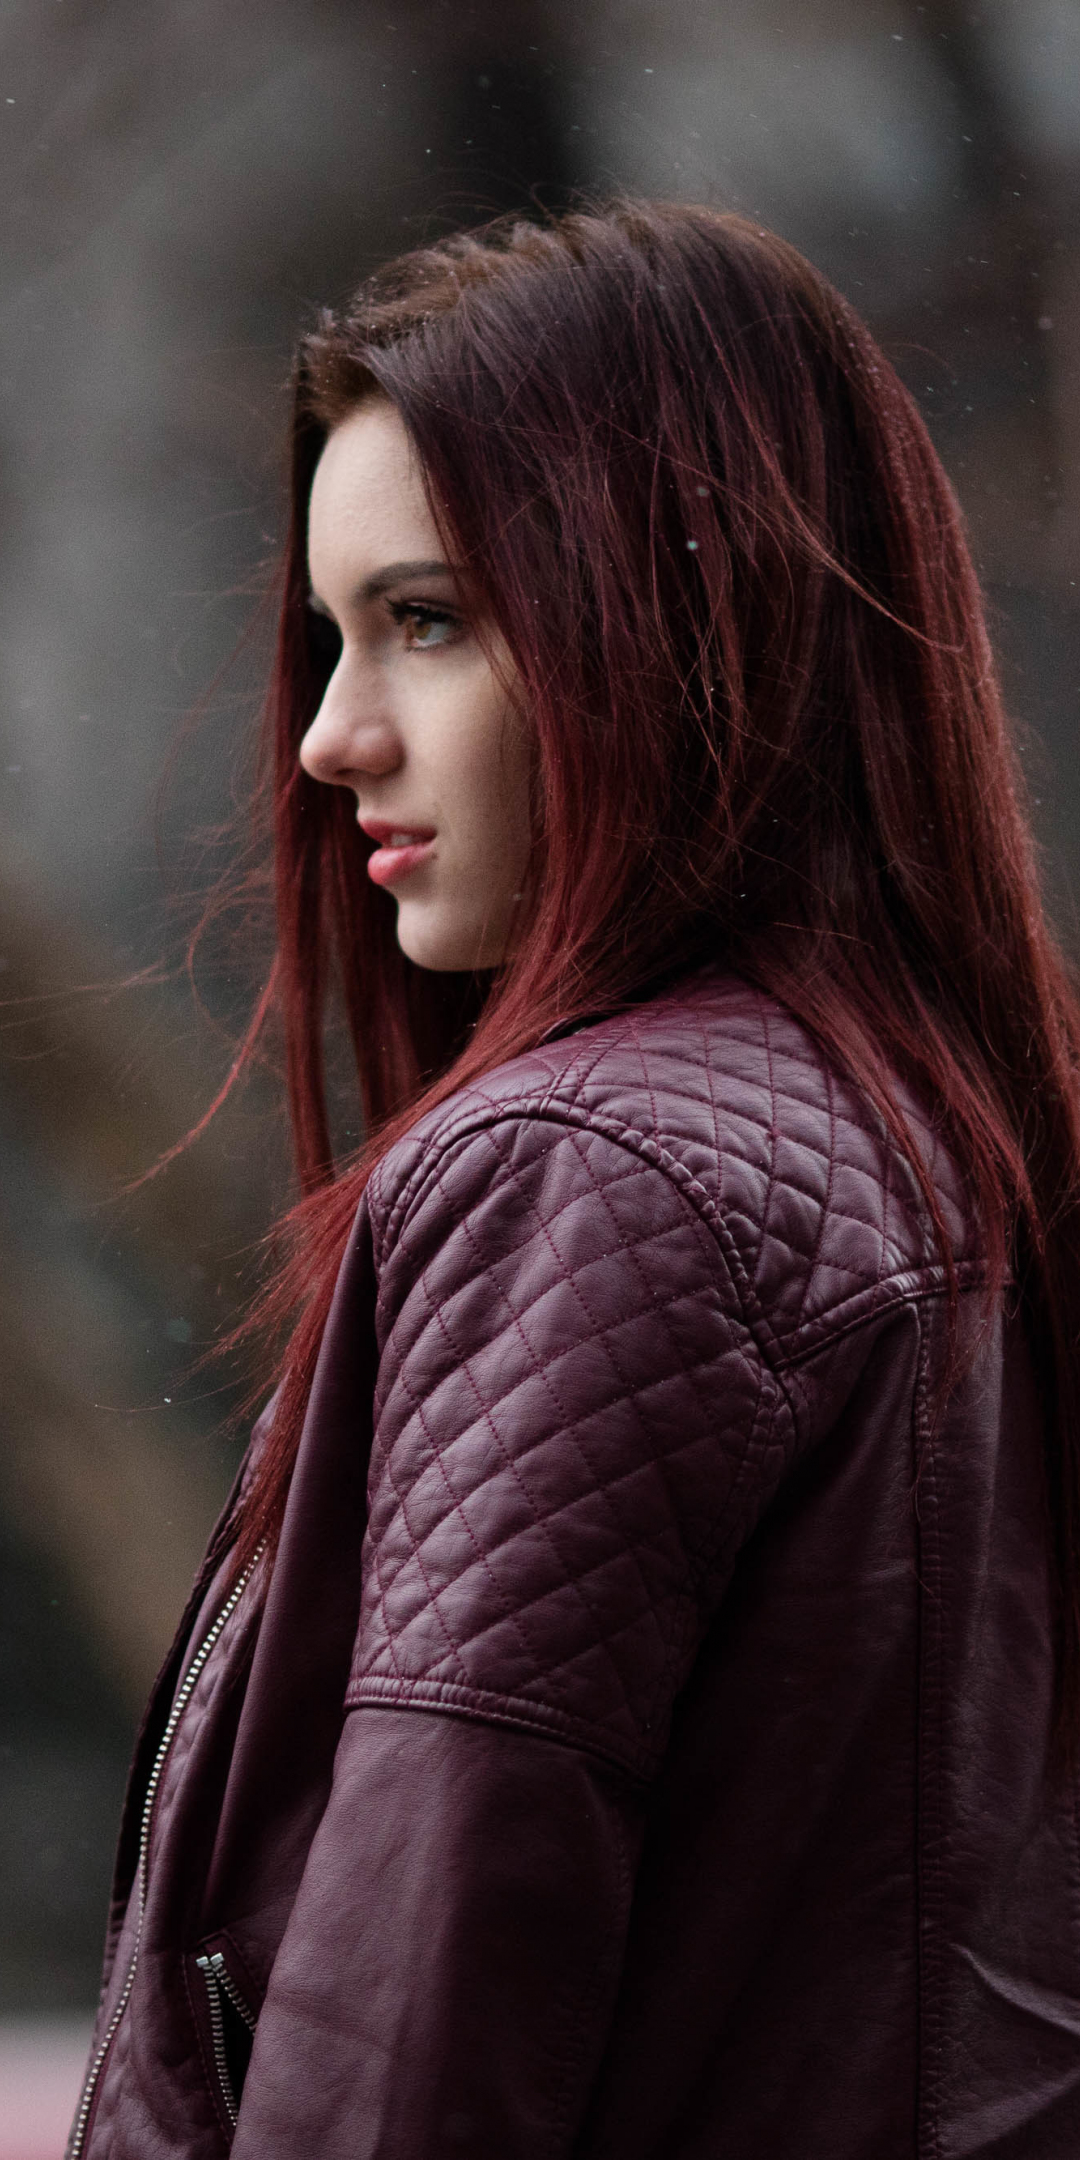 Woman, model, red head, jacket, 1080x2160 wallpaper